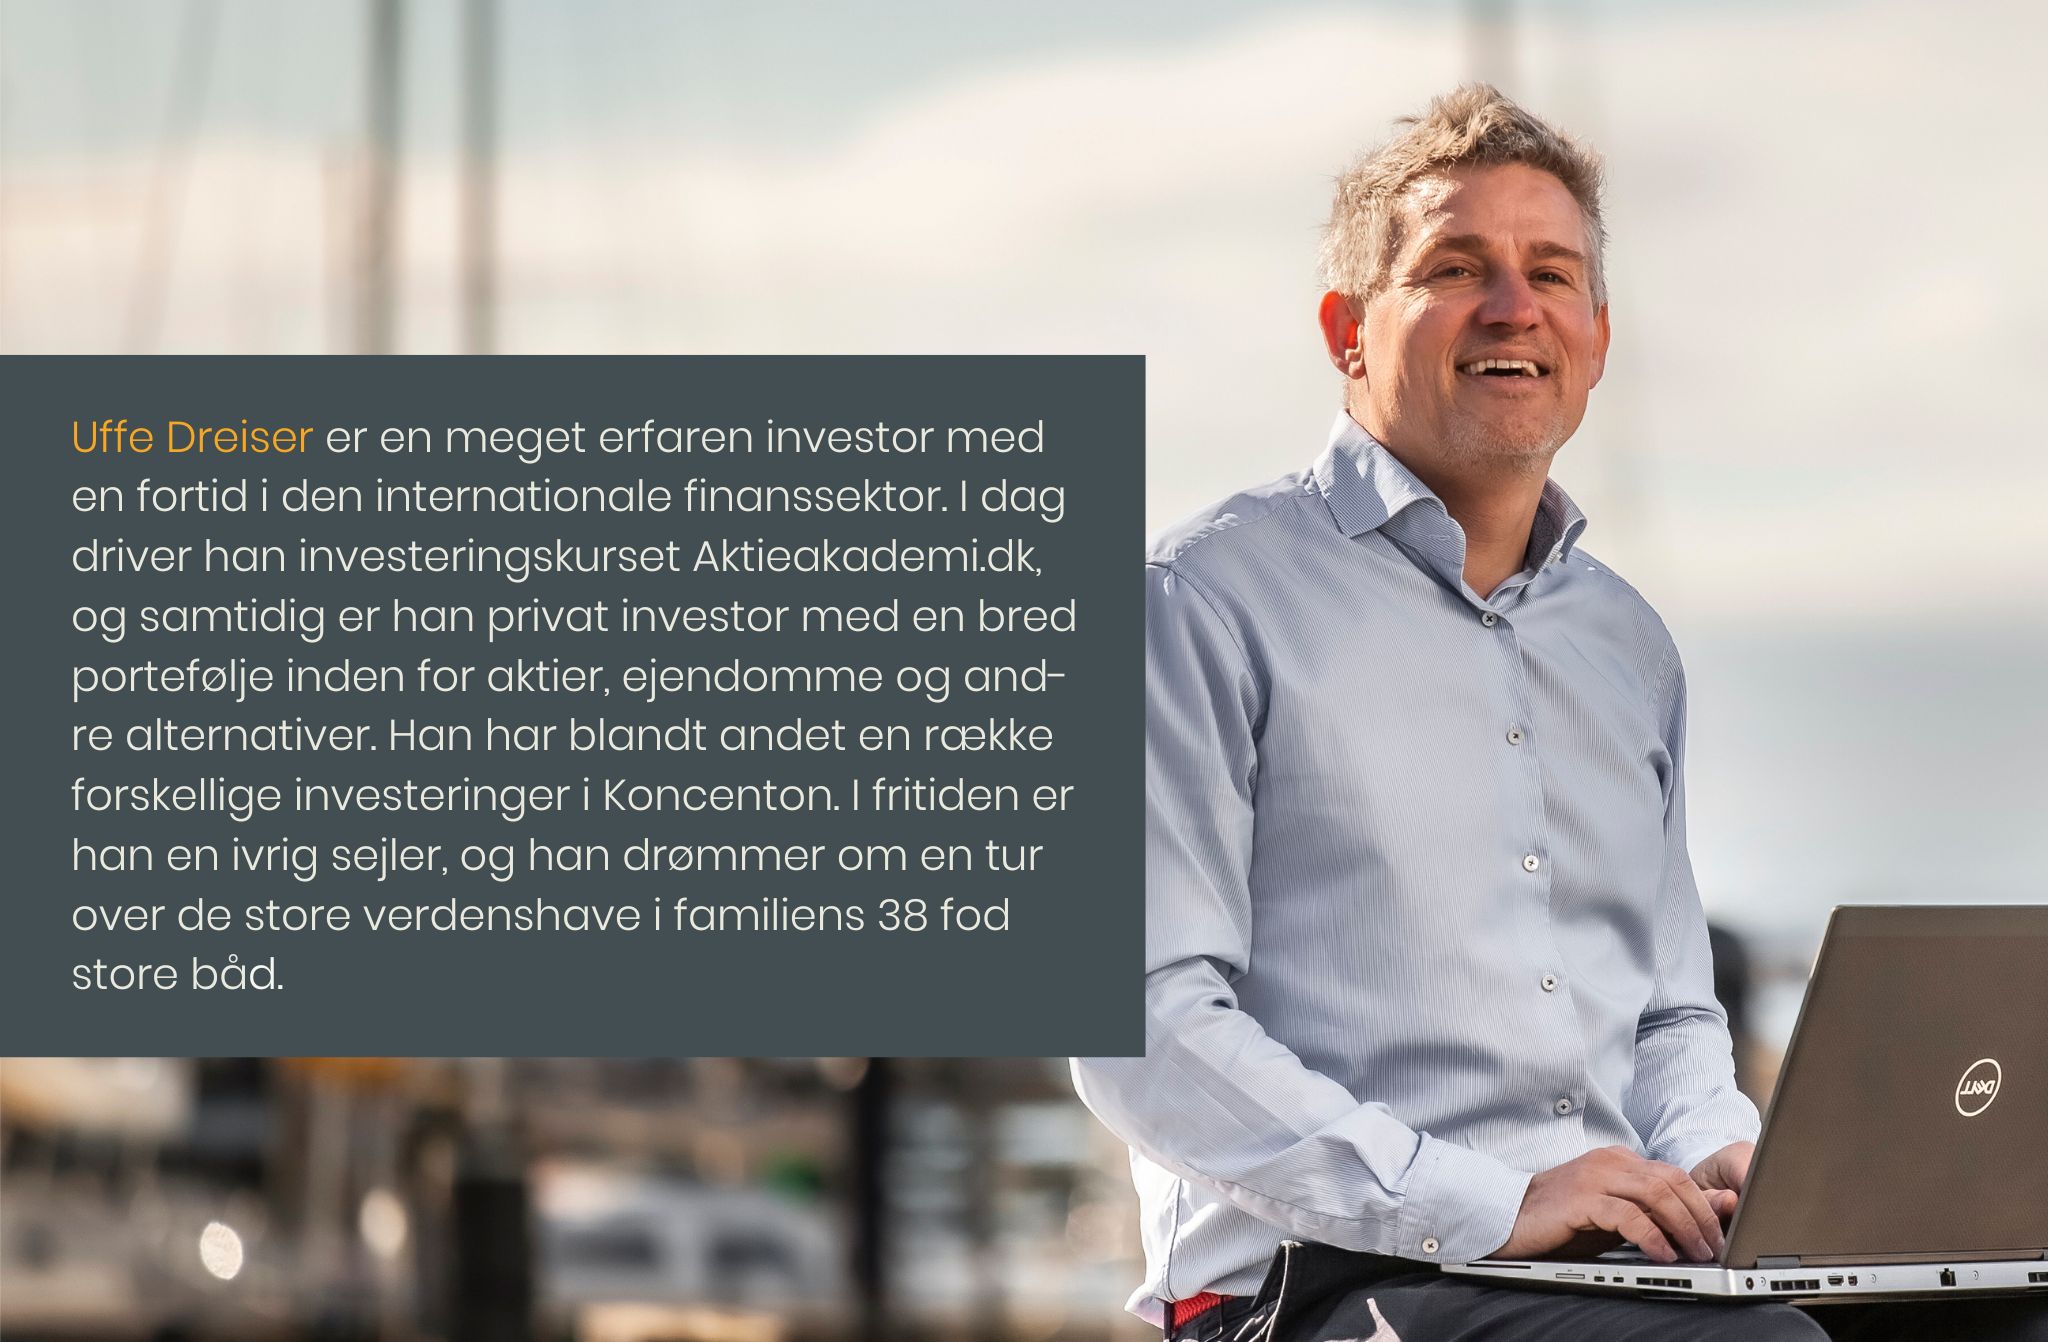 Uffe Dreiser: Hvordan er det at være investor lige nu?